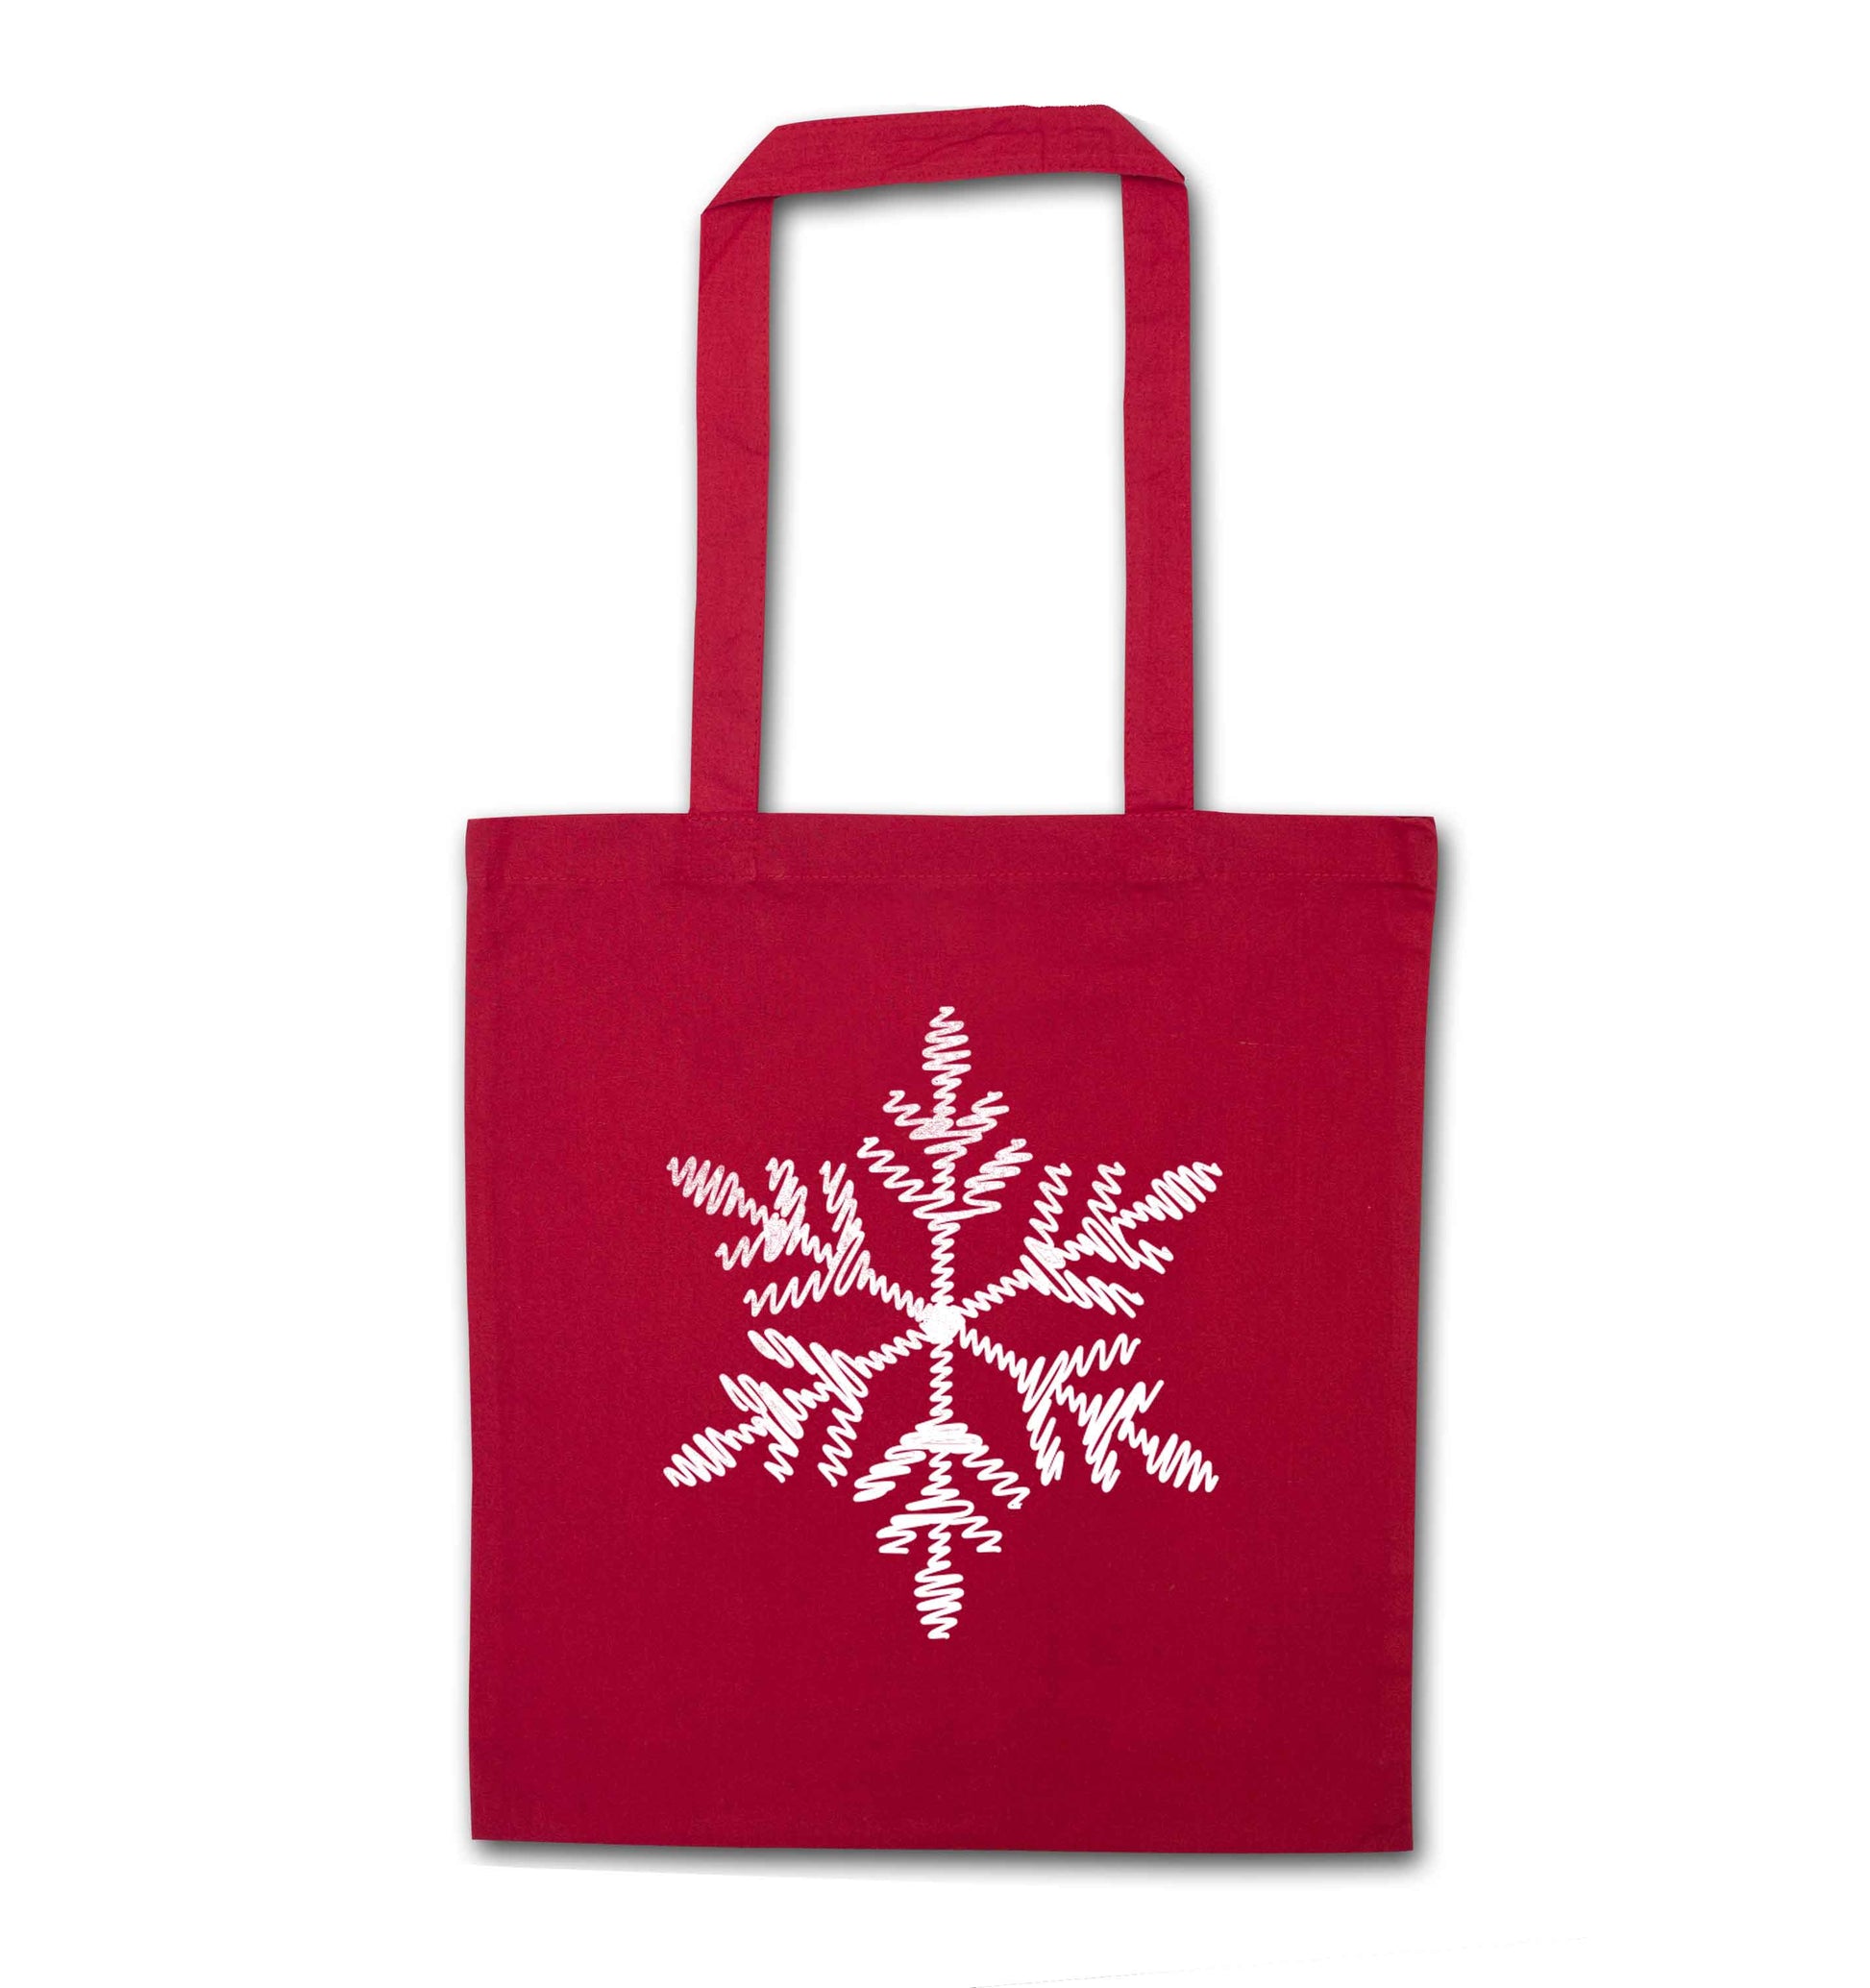 Snowflake red tote bag